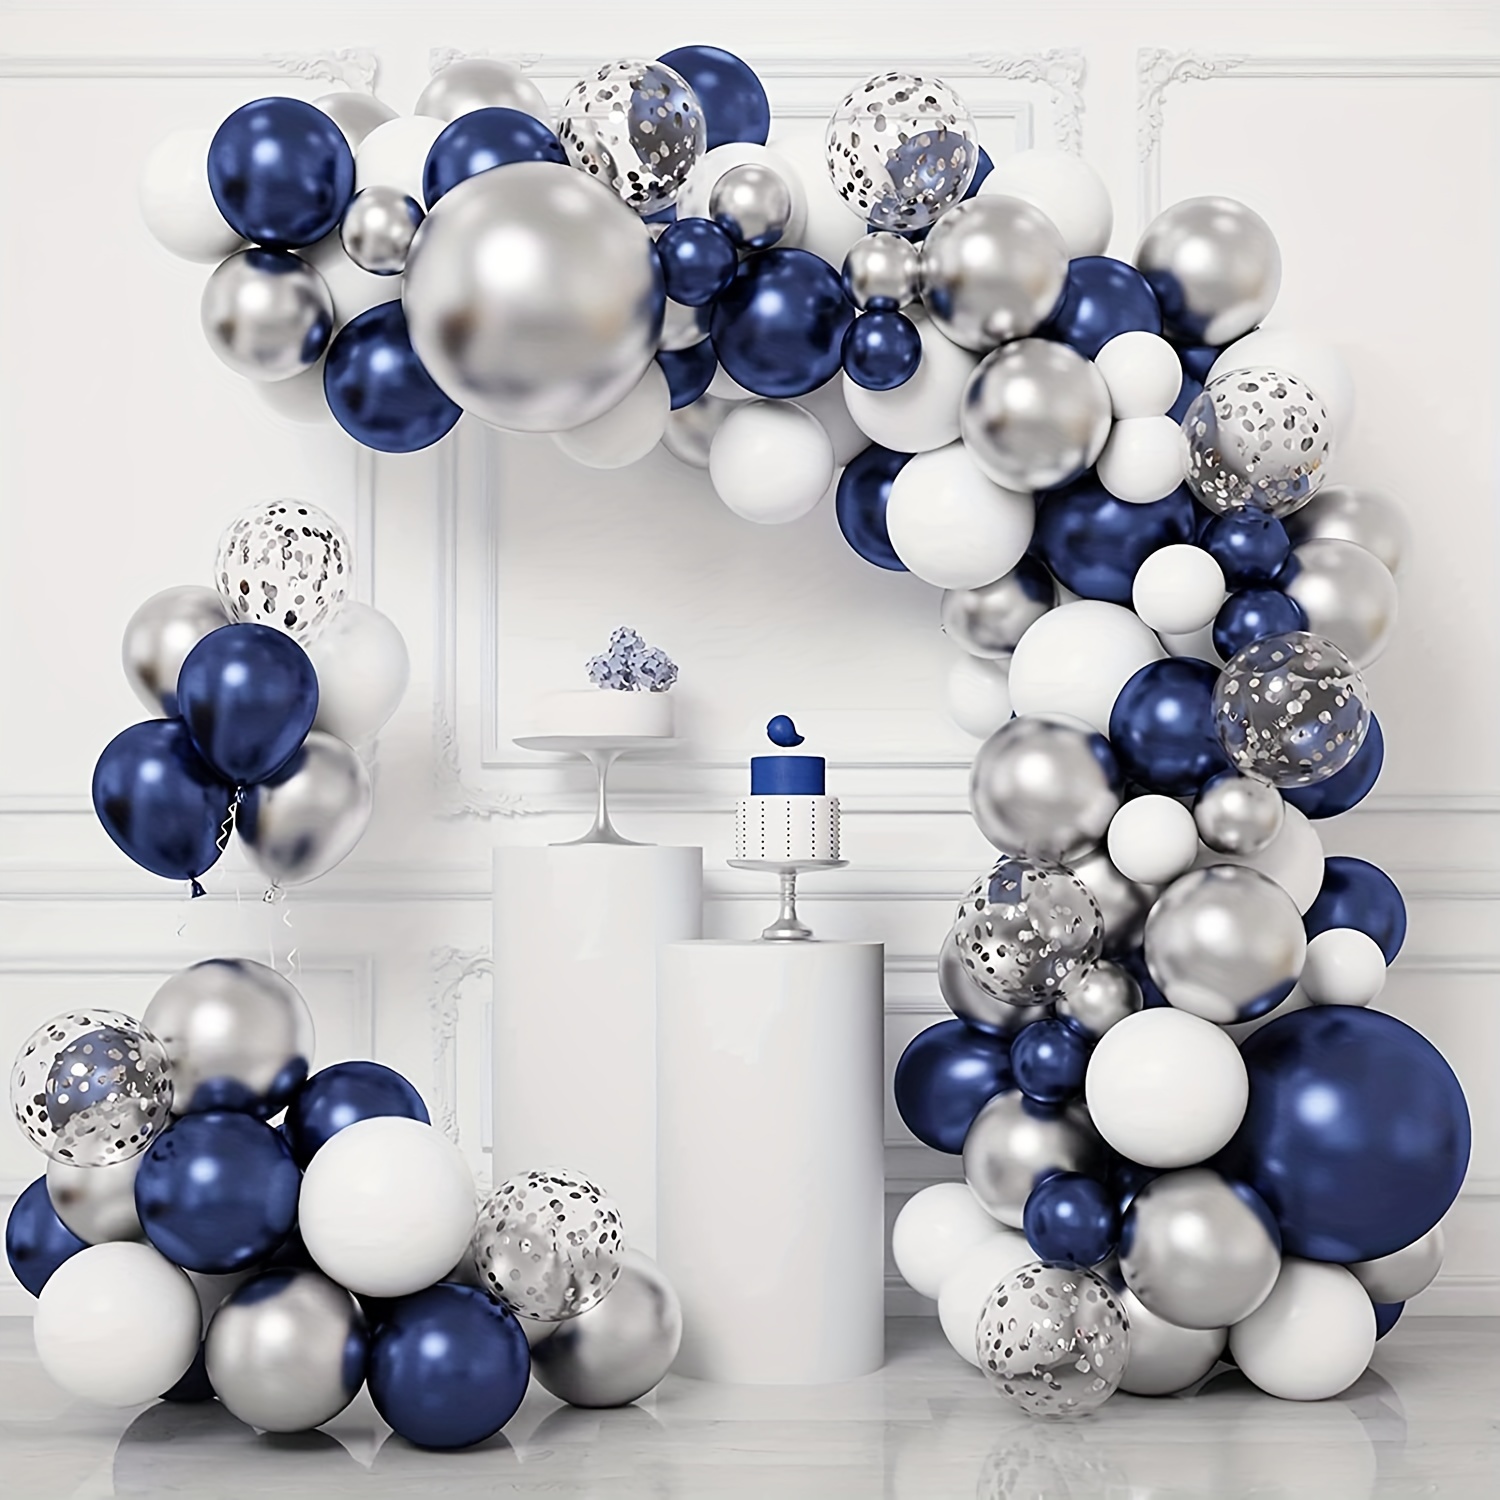 Globos azul marino, azul oscuro, azules de 12 pulgadas para decoración de  año nuevo, bodas, cumpleaños, Navidad, baby shower, fiestas.